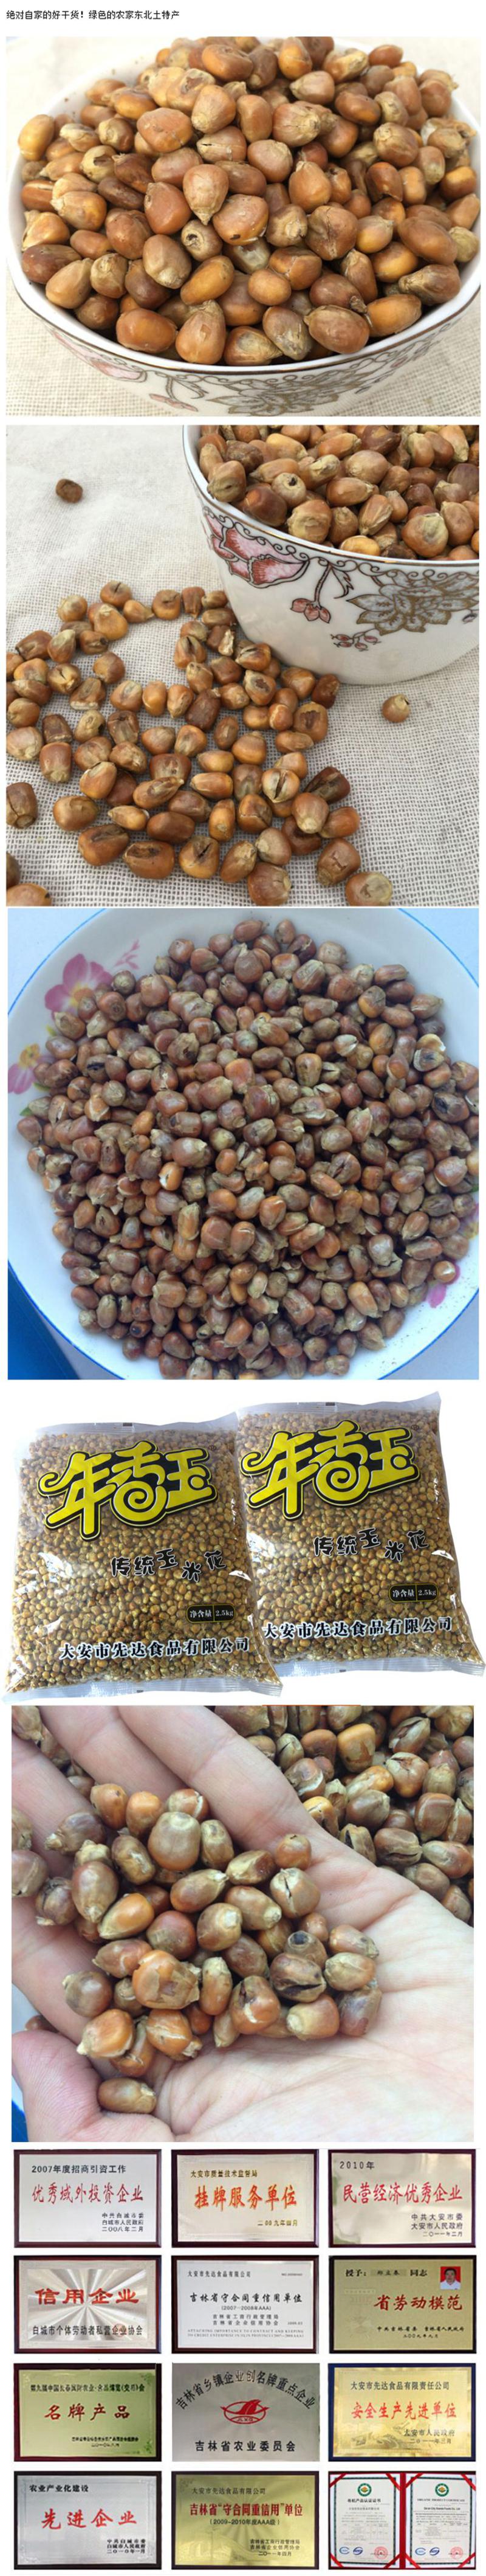 【白城馆】吉林白城先达食品传统玉米花100%原产东北黑土地玉米制作2.5kg/袋